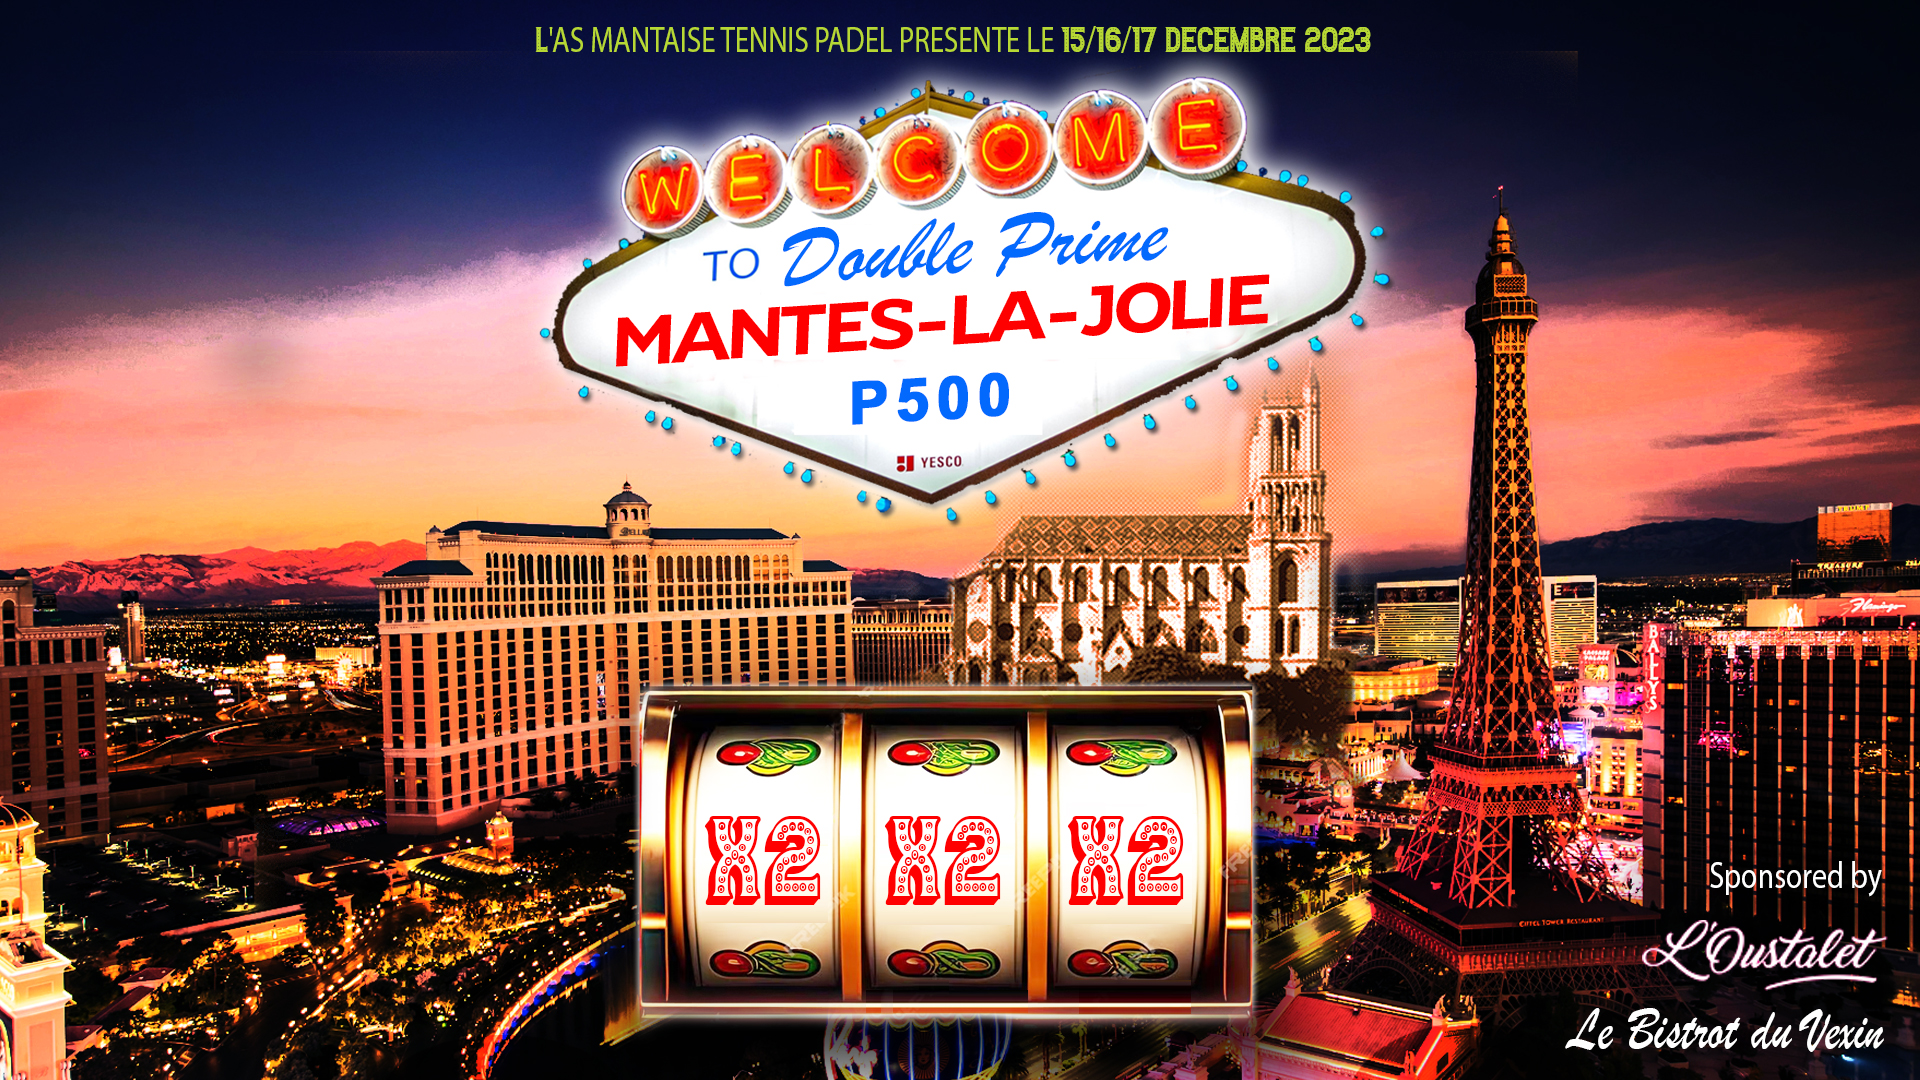 P500 “Double Prime” Mantes-la-Jolie de L'Oustalet